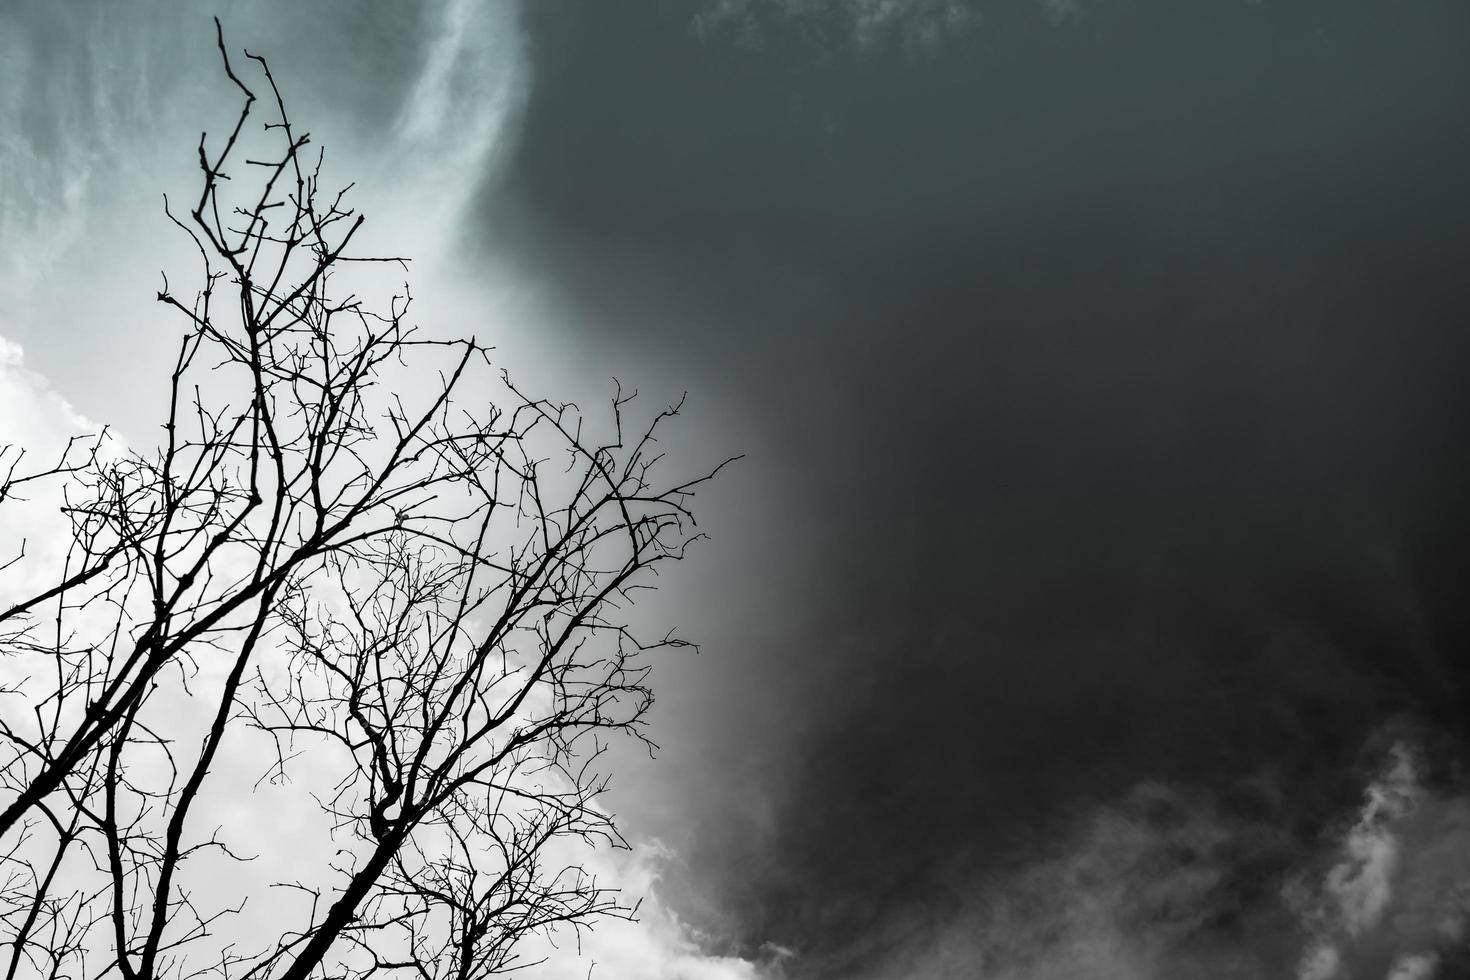 silhouette arbre mort sur fond de ciel dramatique sombre pour effrayant ou mort. concept de fond sans espoir ou désespoir. photo